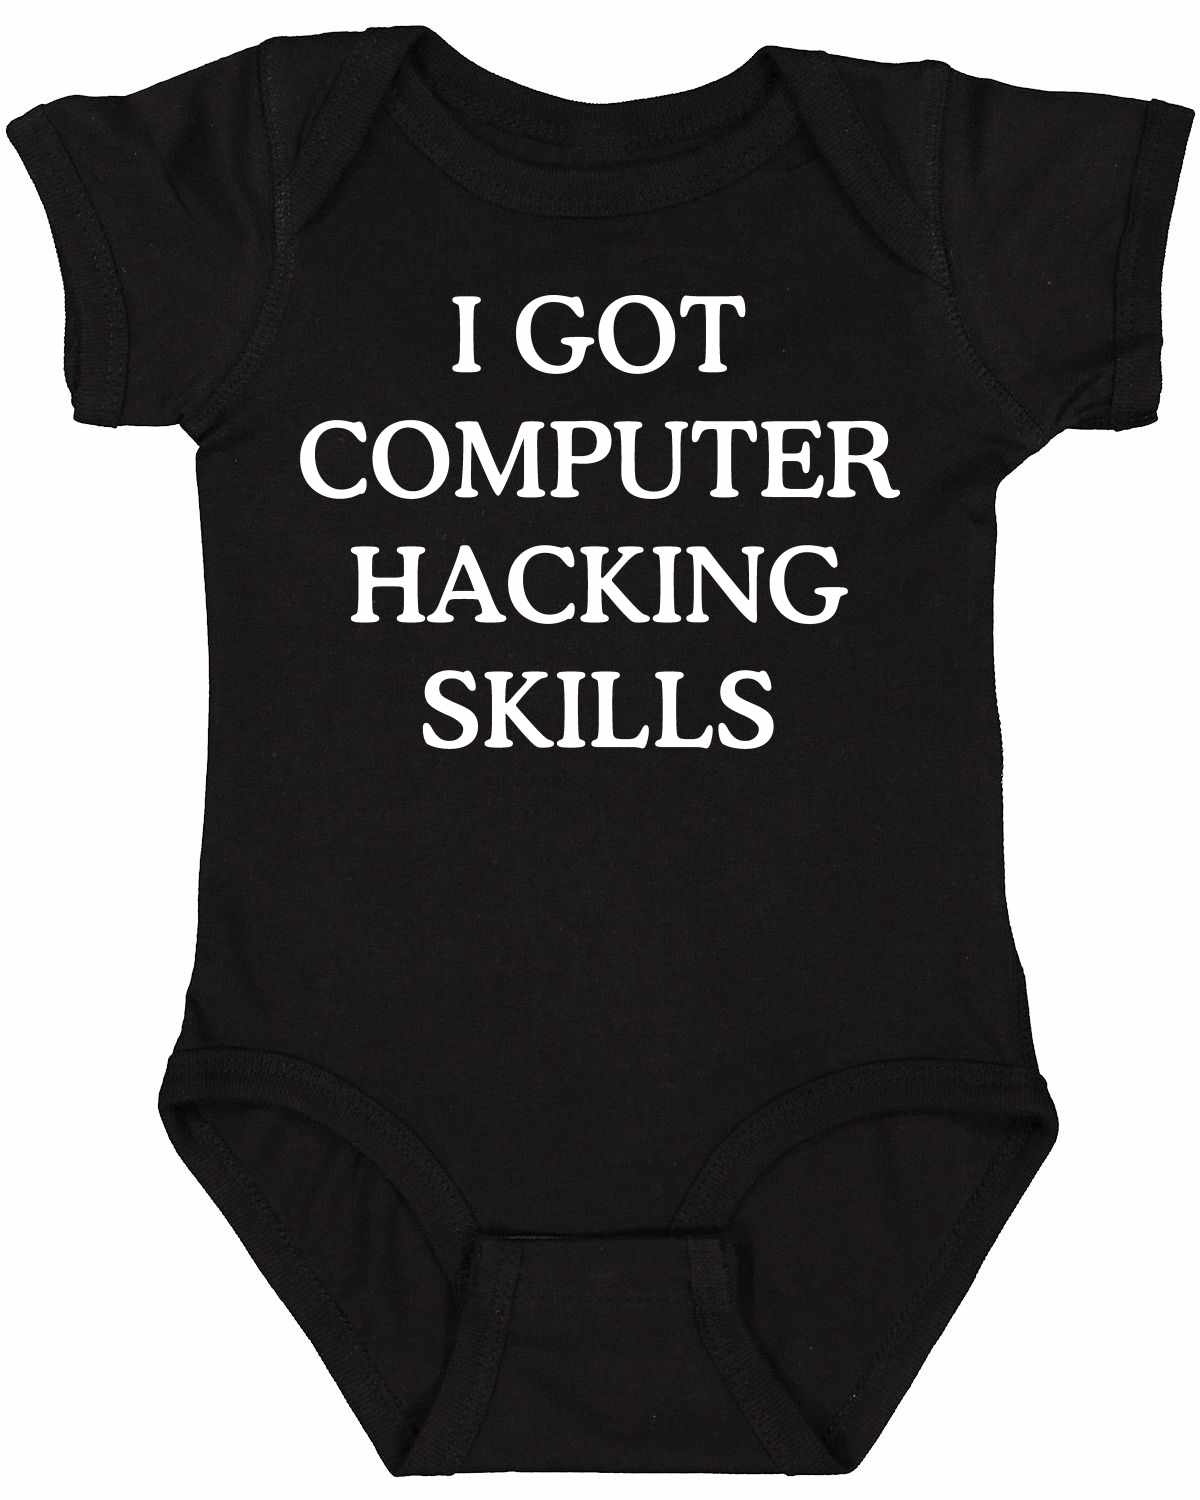 I GOT COMPUTER HACKING SKILLS on Infant BodySuit